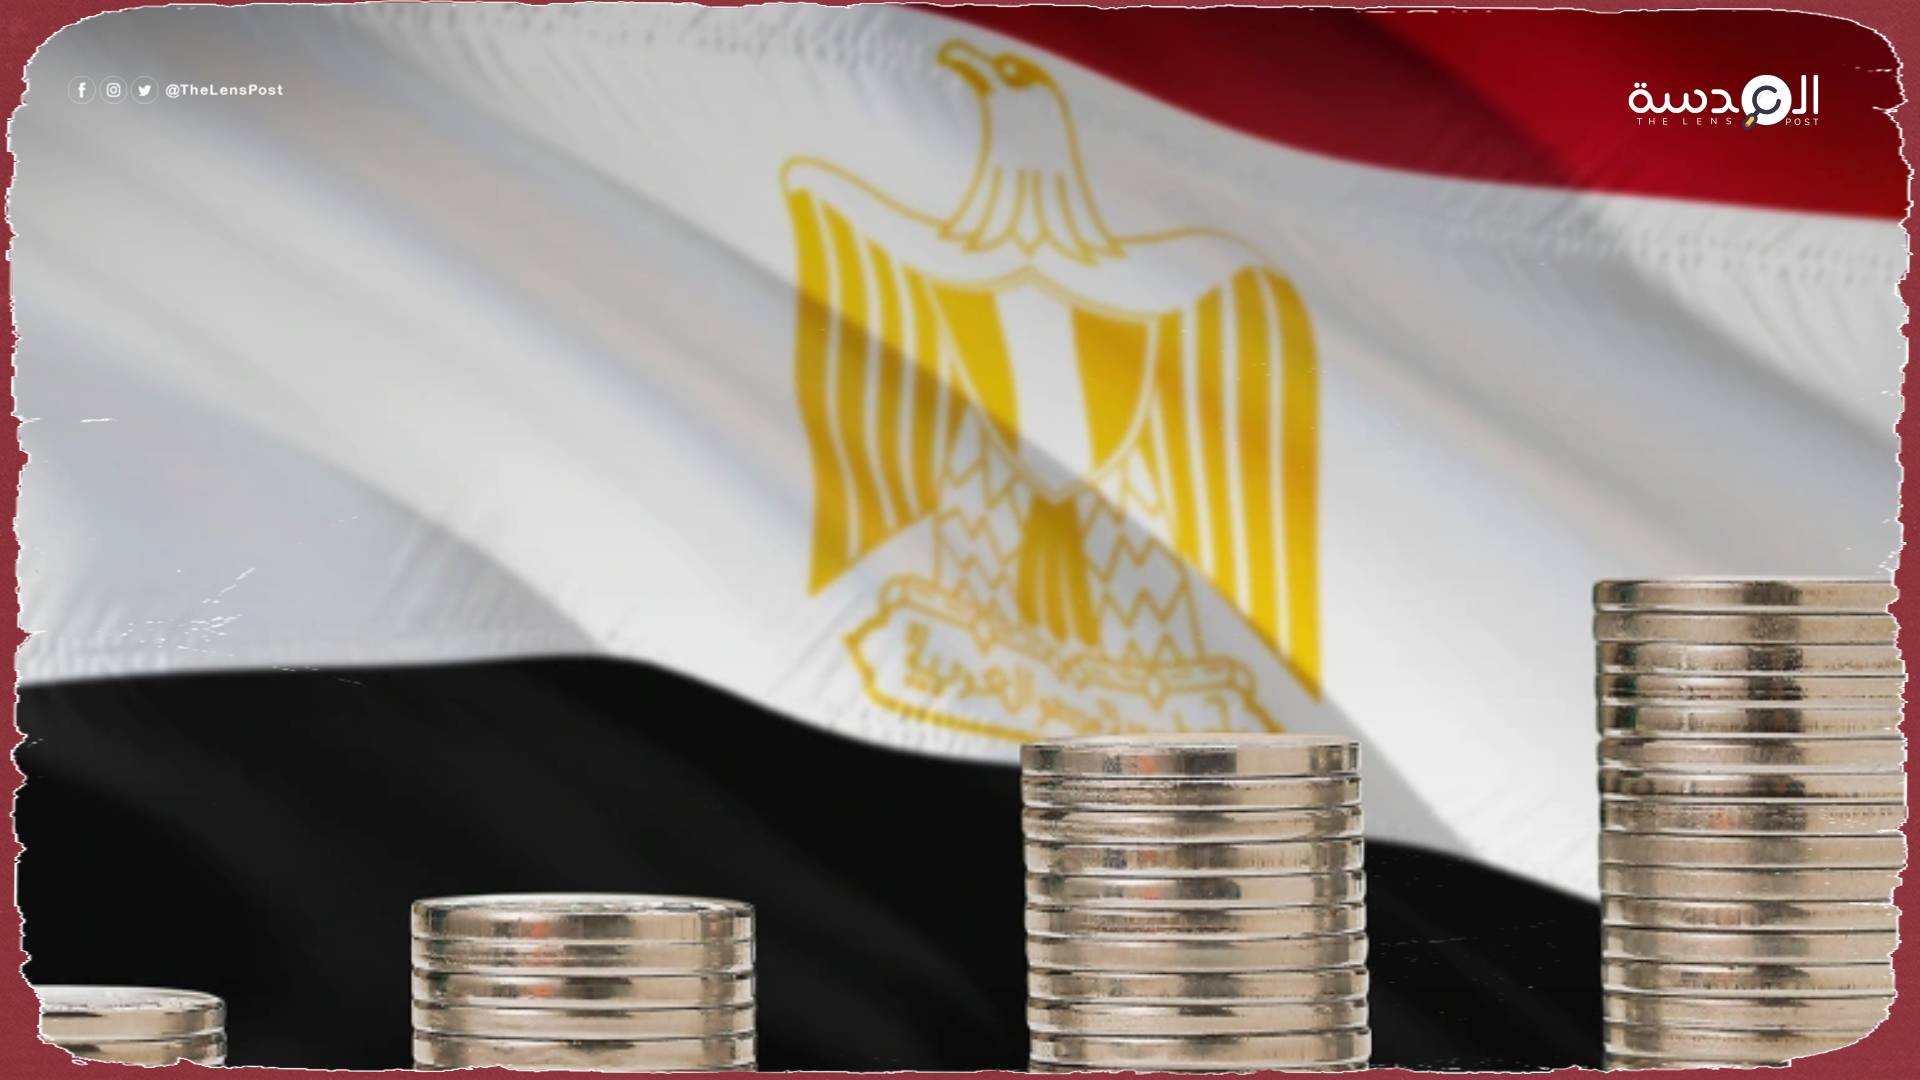 اقتصادي مصري: تردي الأوضاع الاقتصادية في مصر قد ينعكس على المجتمع بالسلب 